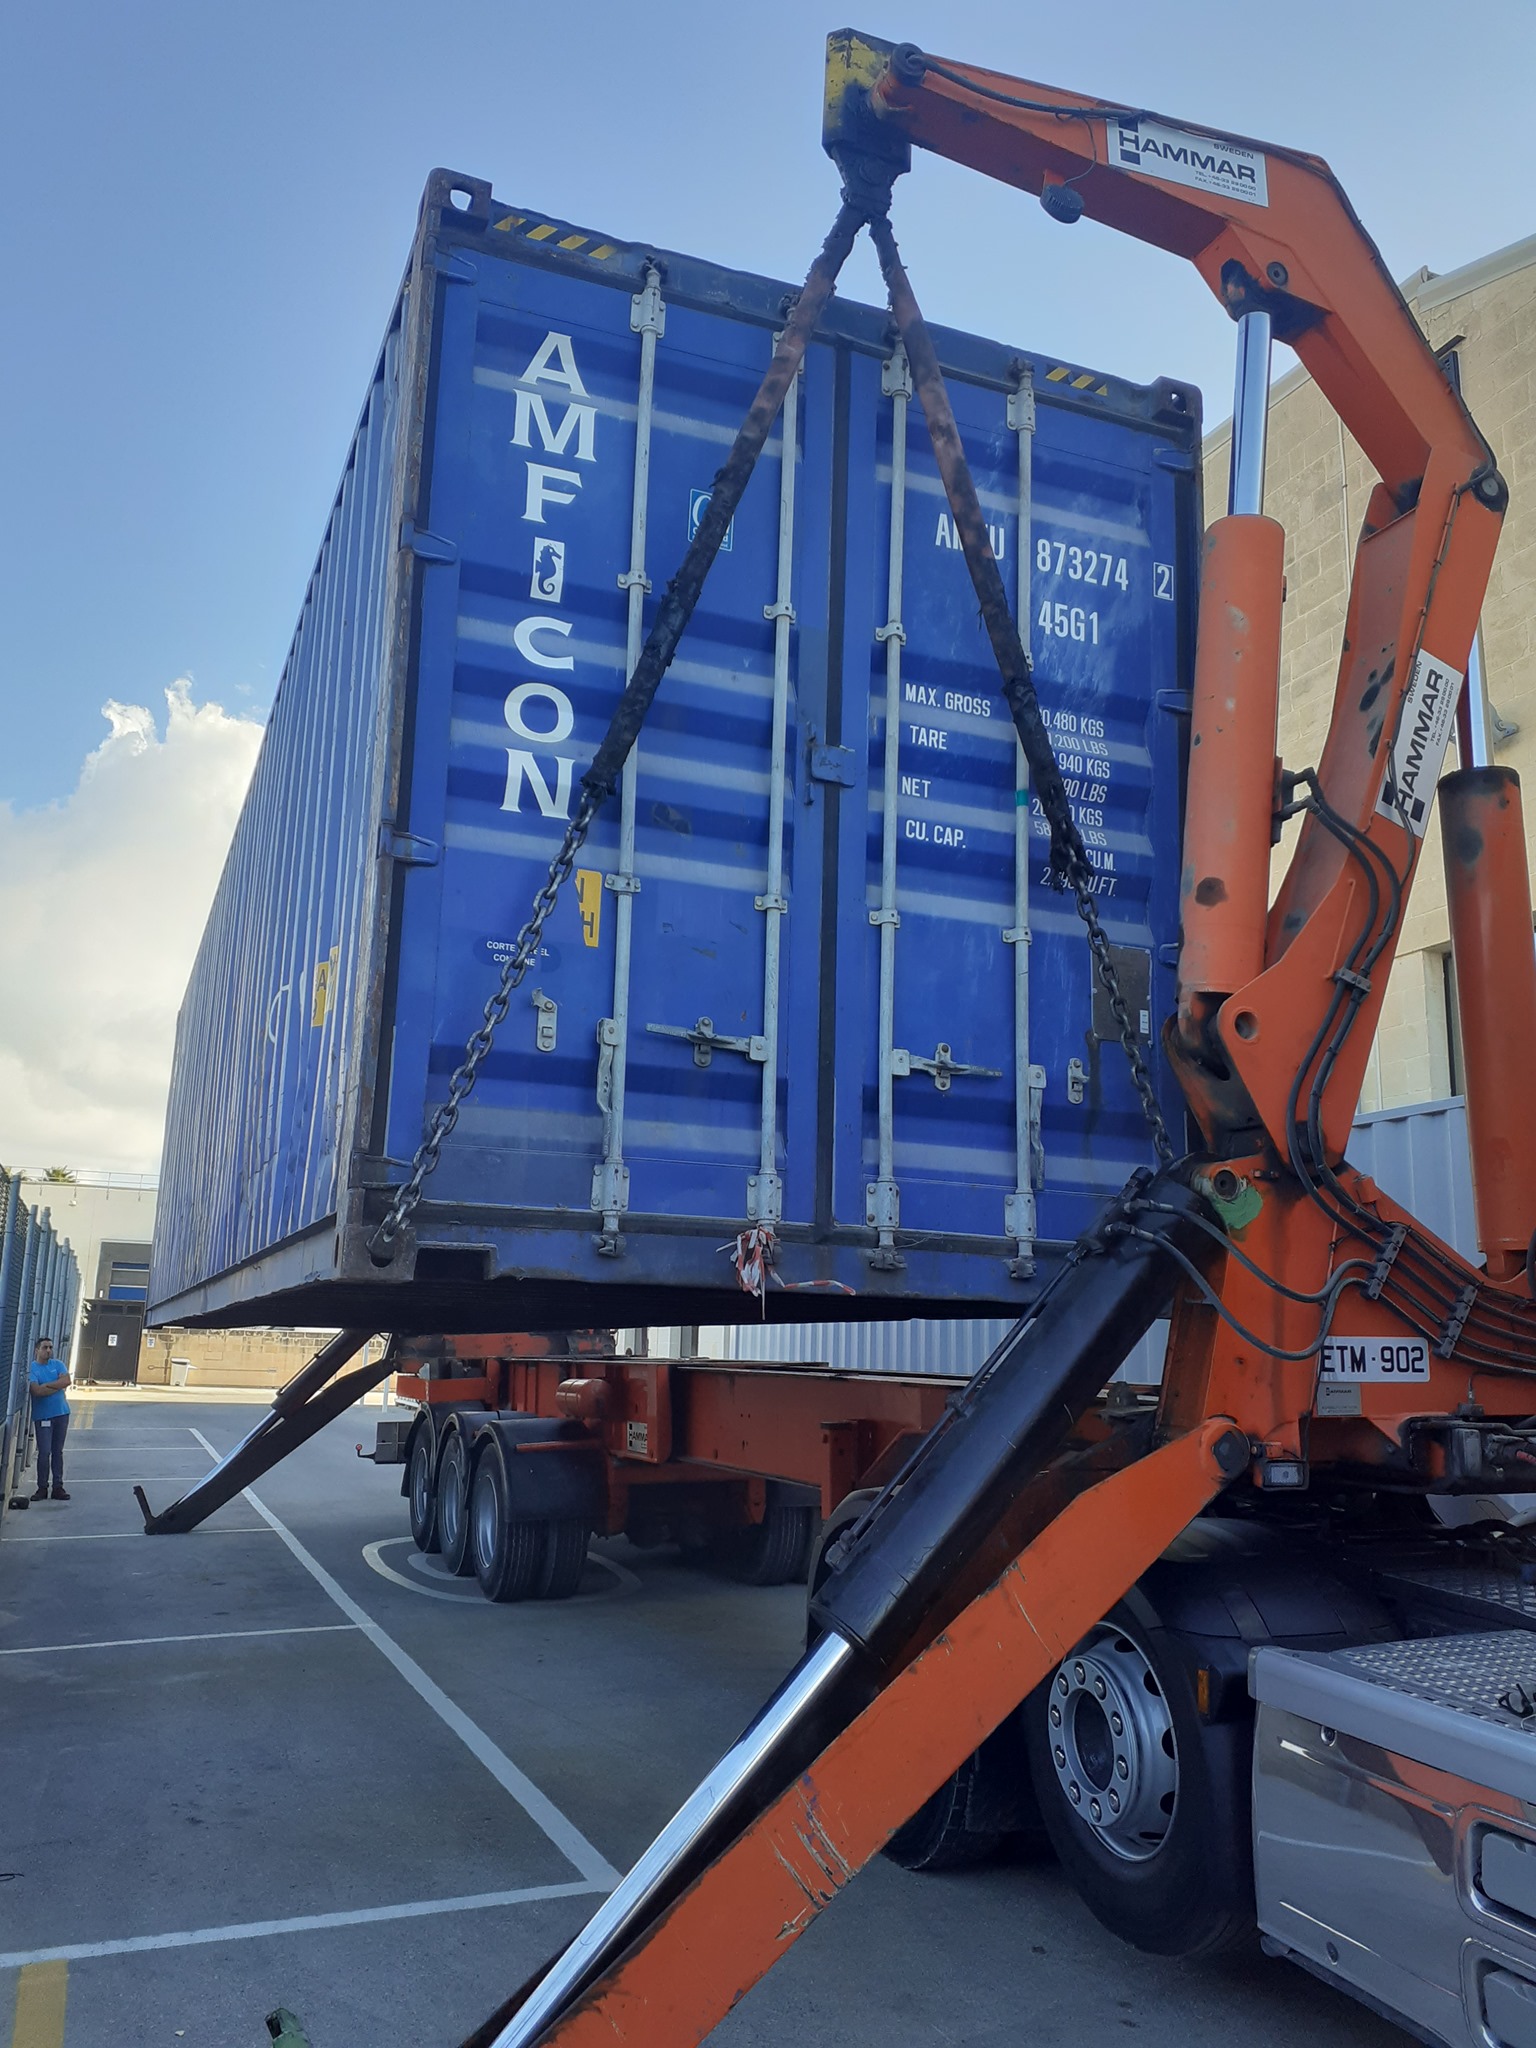 Maritime Logistics Alliance Malta - Container Repairs / Surveys / Logistics/ Lashing / Sales / Leasing / Vessel Repairs / Cargo Surveying / Port Logistics / Transport Haulage